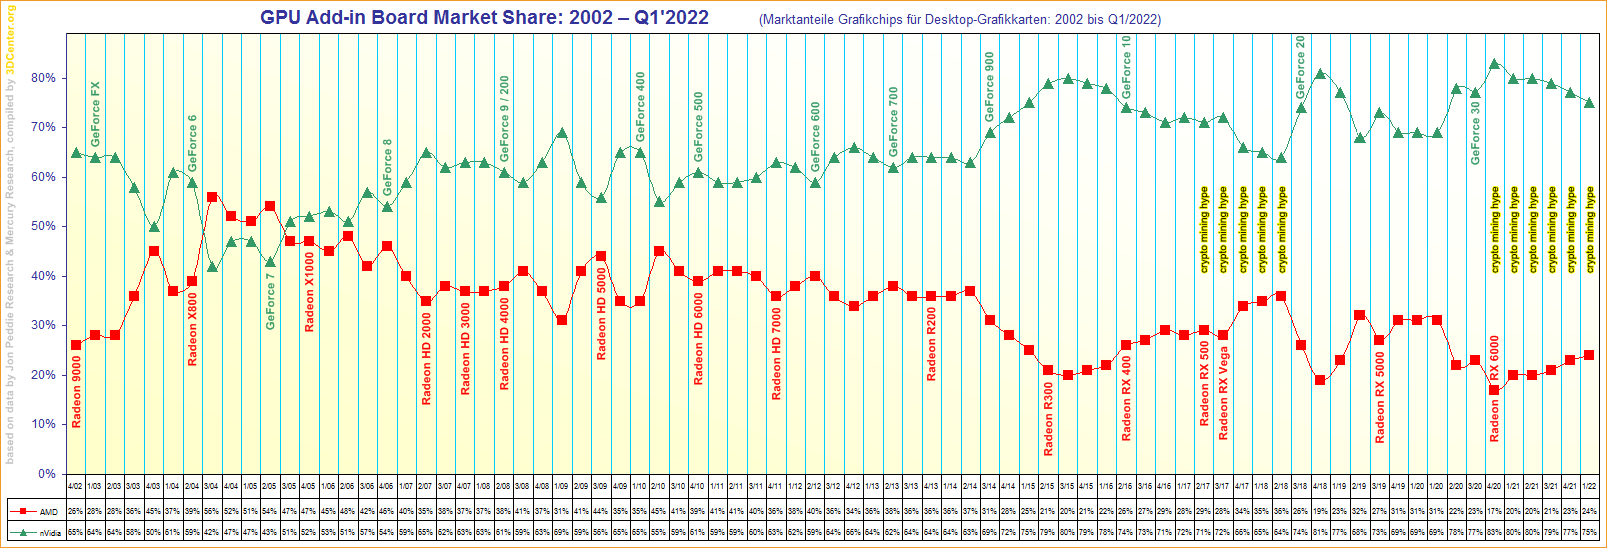 Marktanteile Grafikchips für Desktop-Grafikkarten von 2002 bis Q1/2022